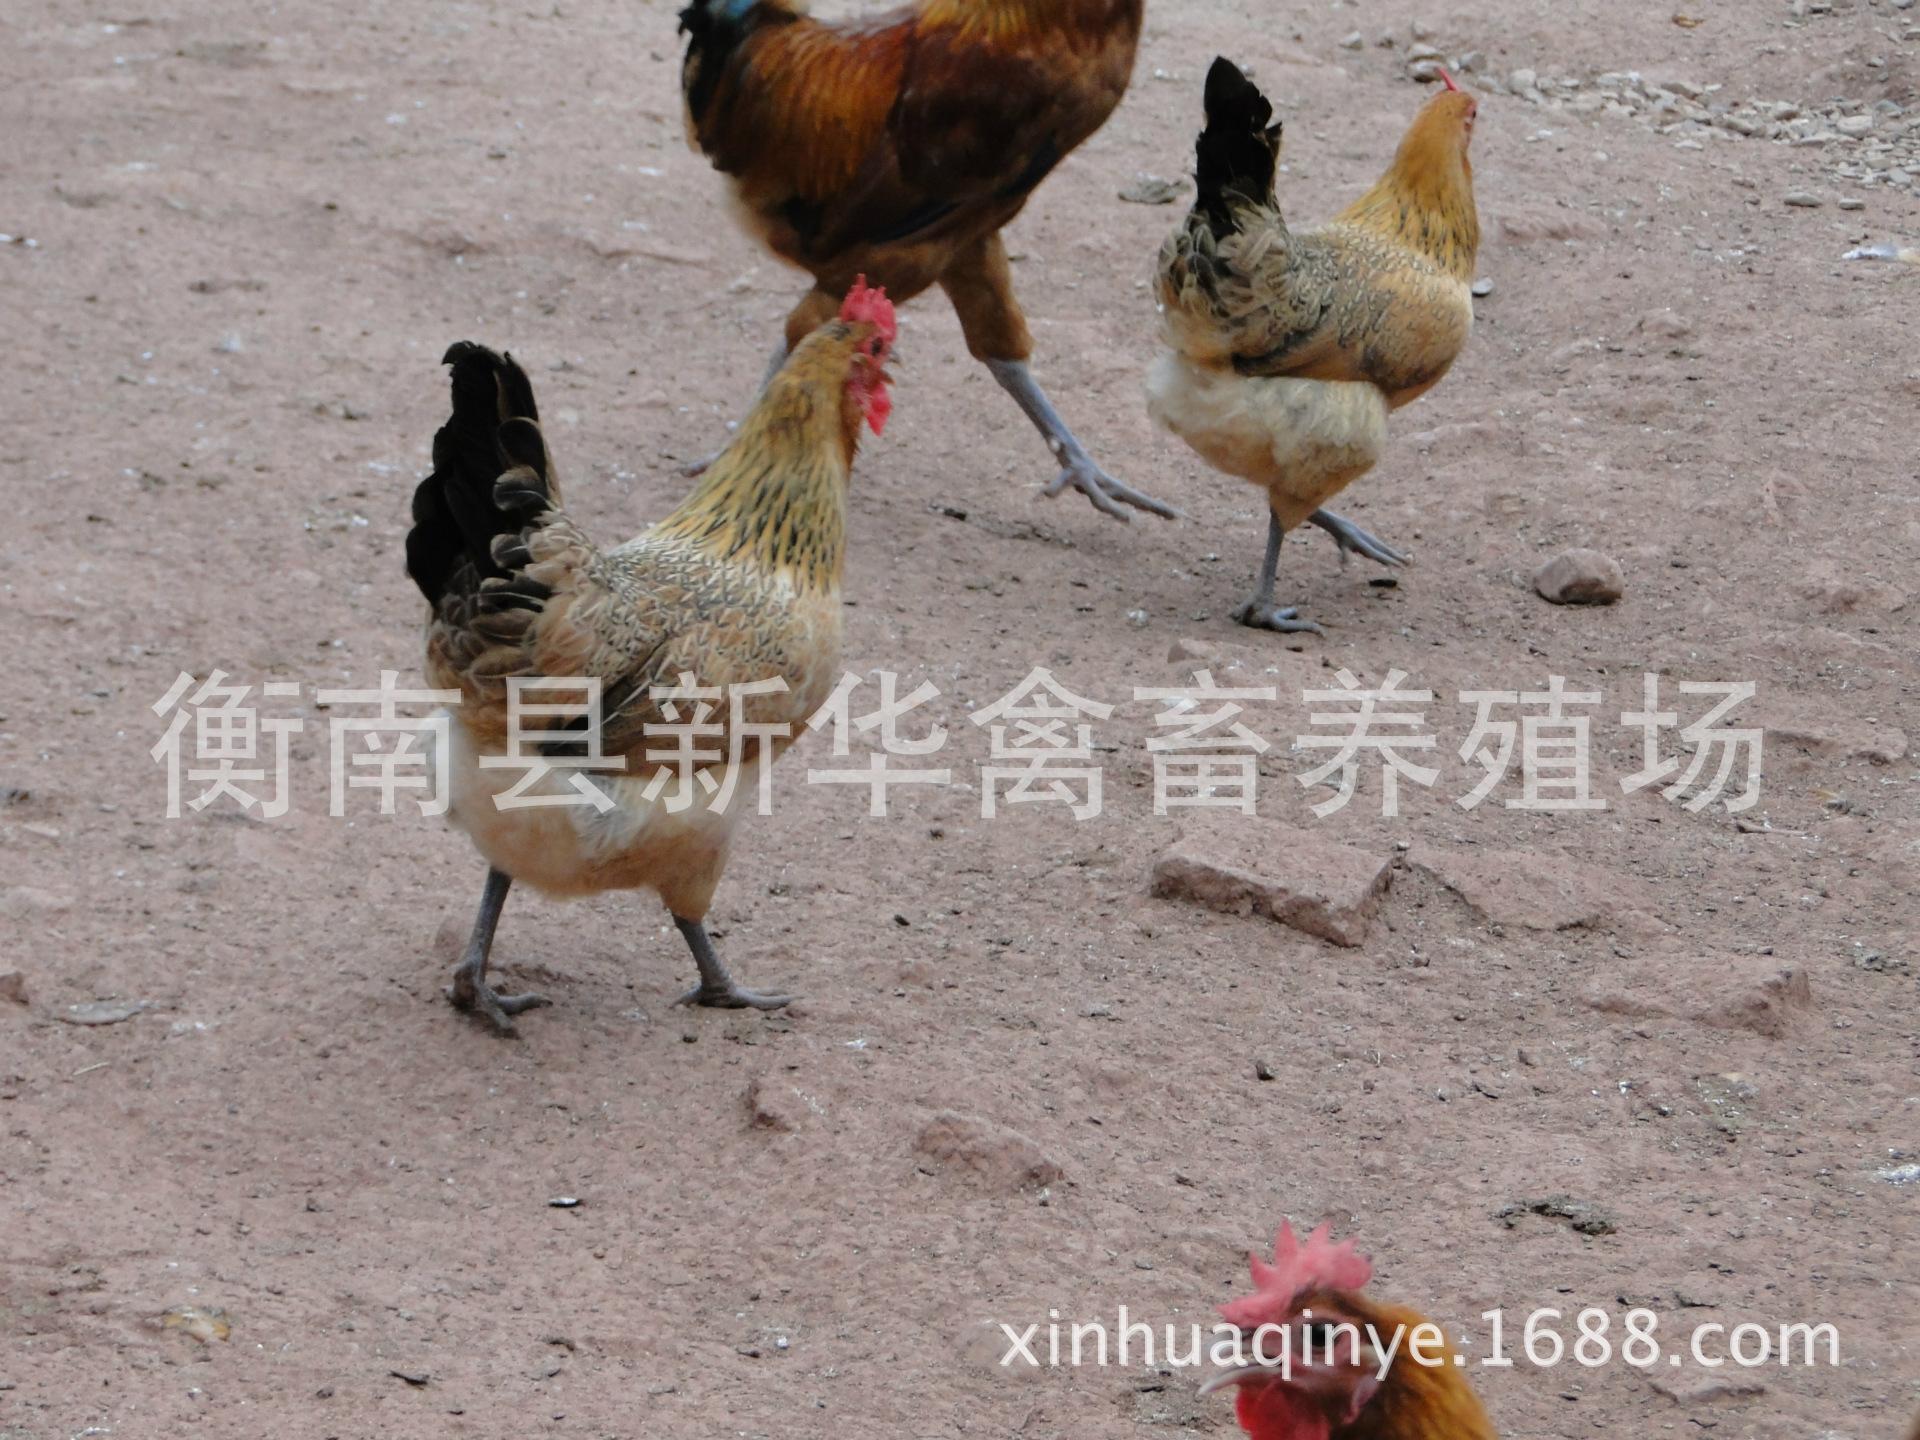 湖南衡阳新华禽畜厂家直销优质包打马利克疫苗青脚土鸡混合苗示例图12